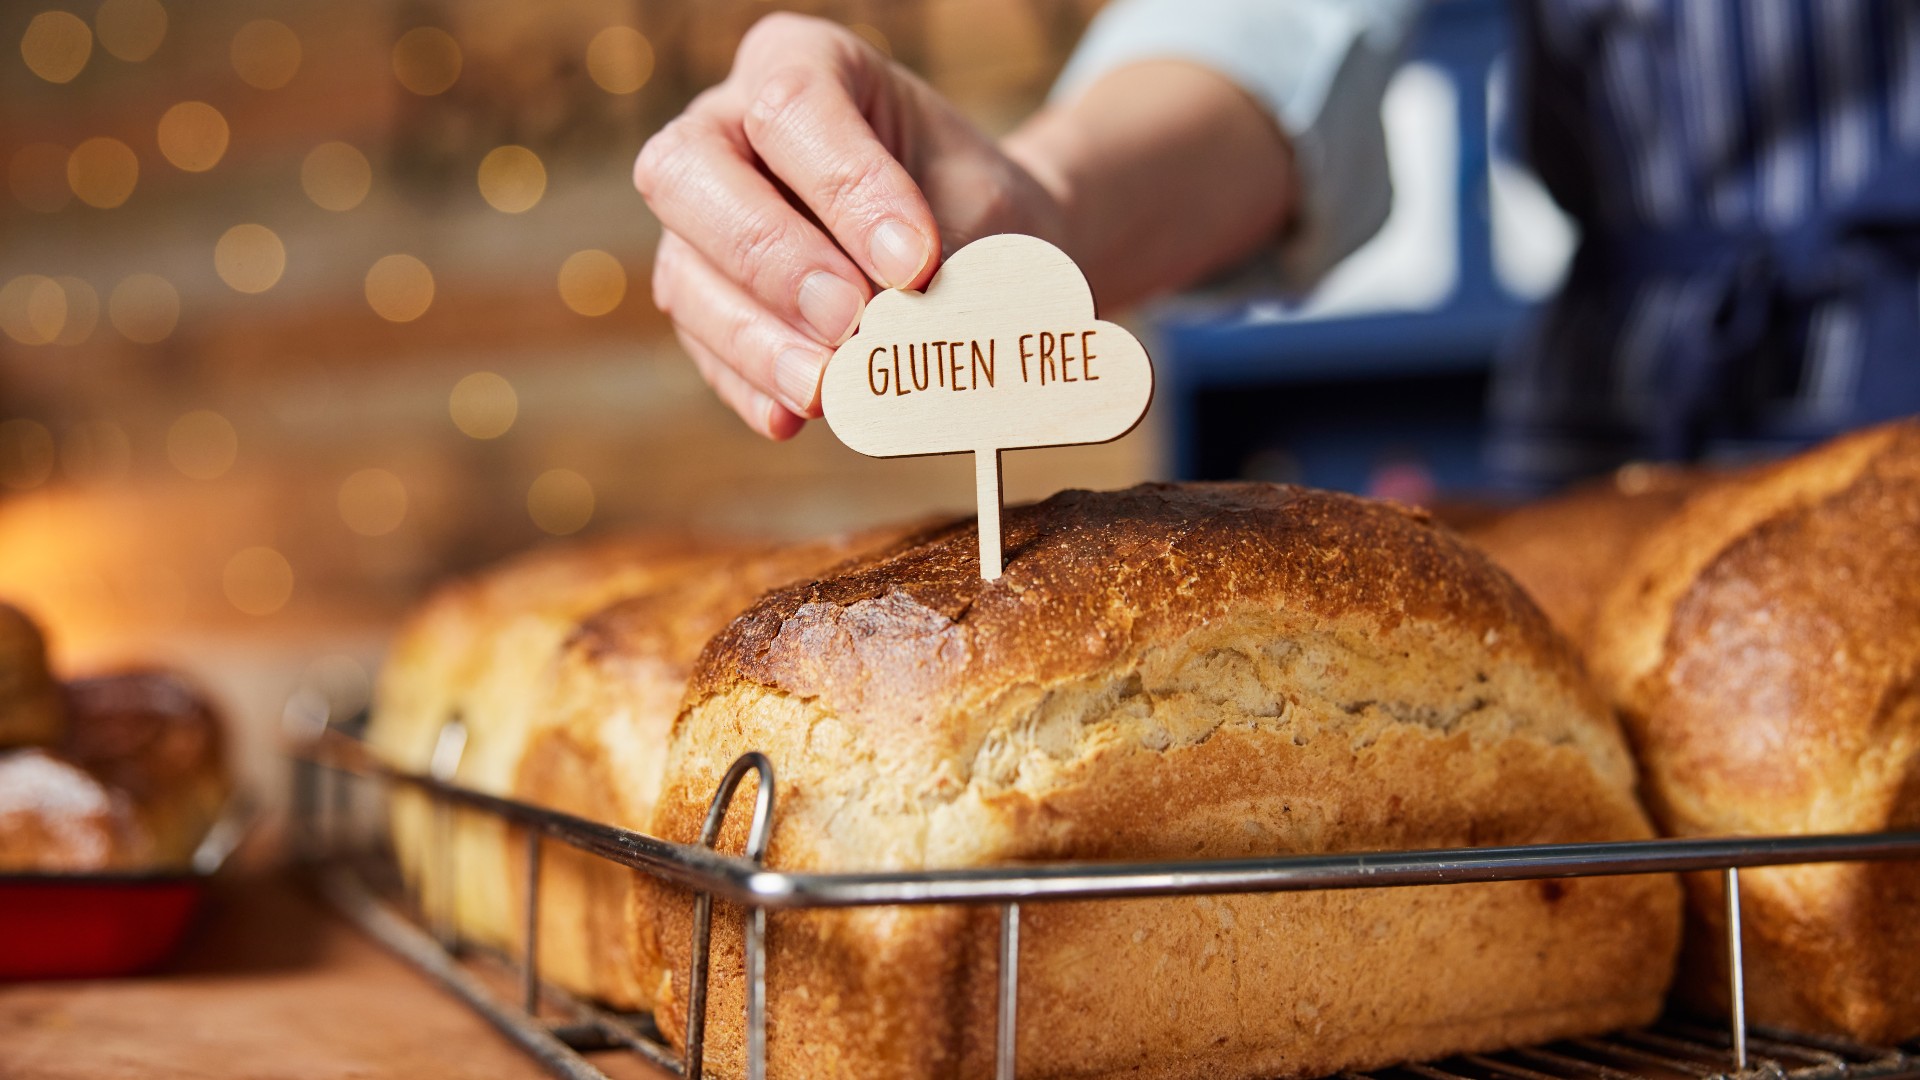 Gluten free loaf of bread